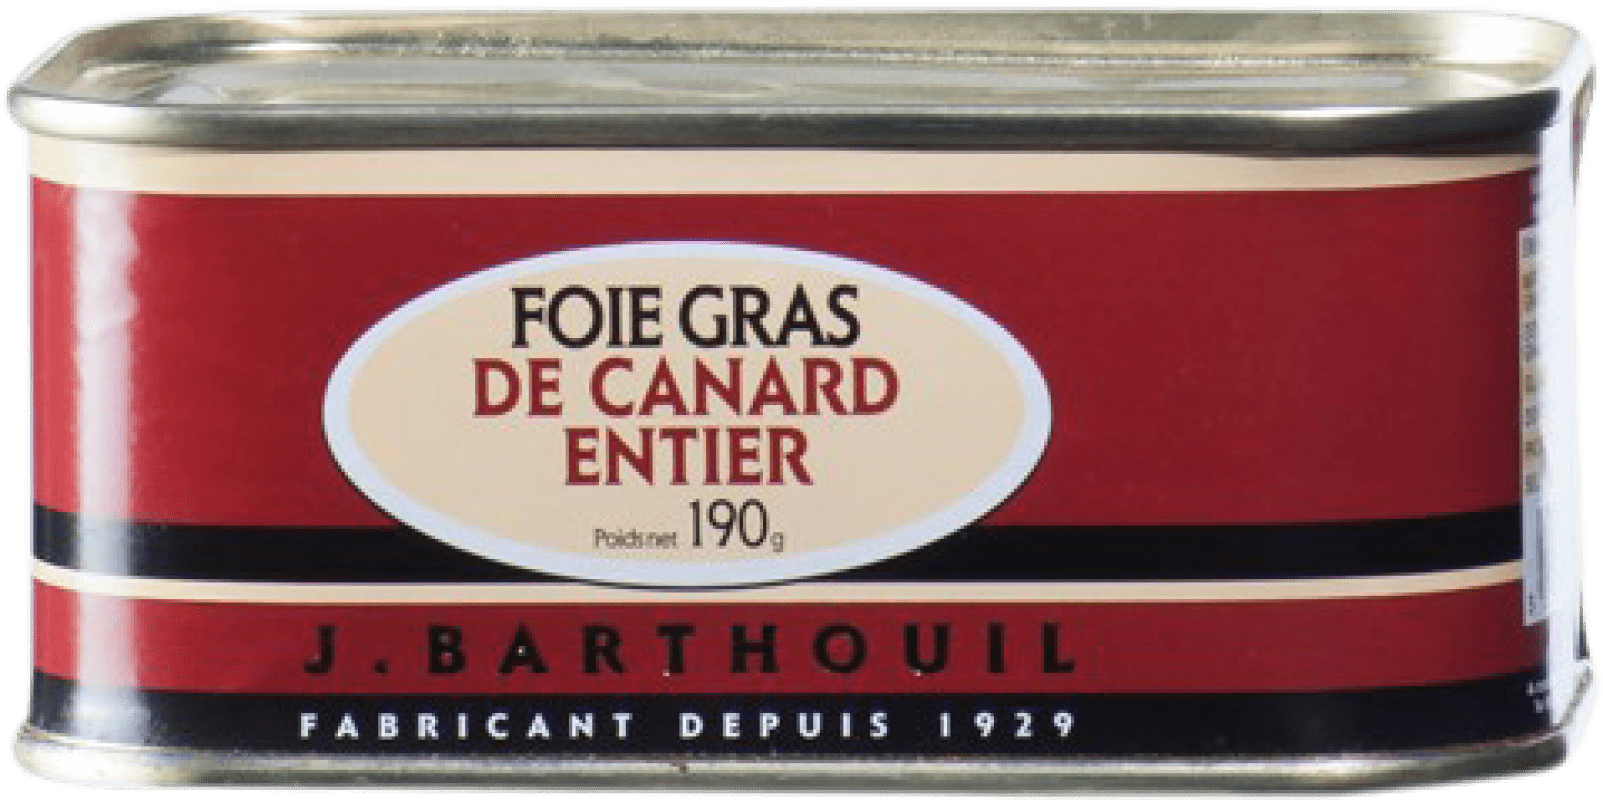 32,95 € Free Shipping | Foie y Patés J. Barthouil Foie Grass de Canard Entier France